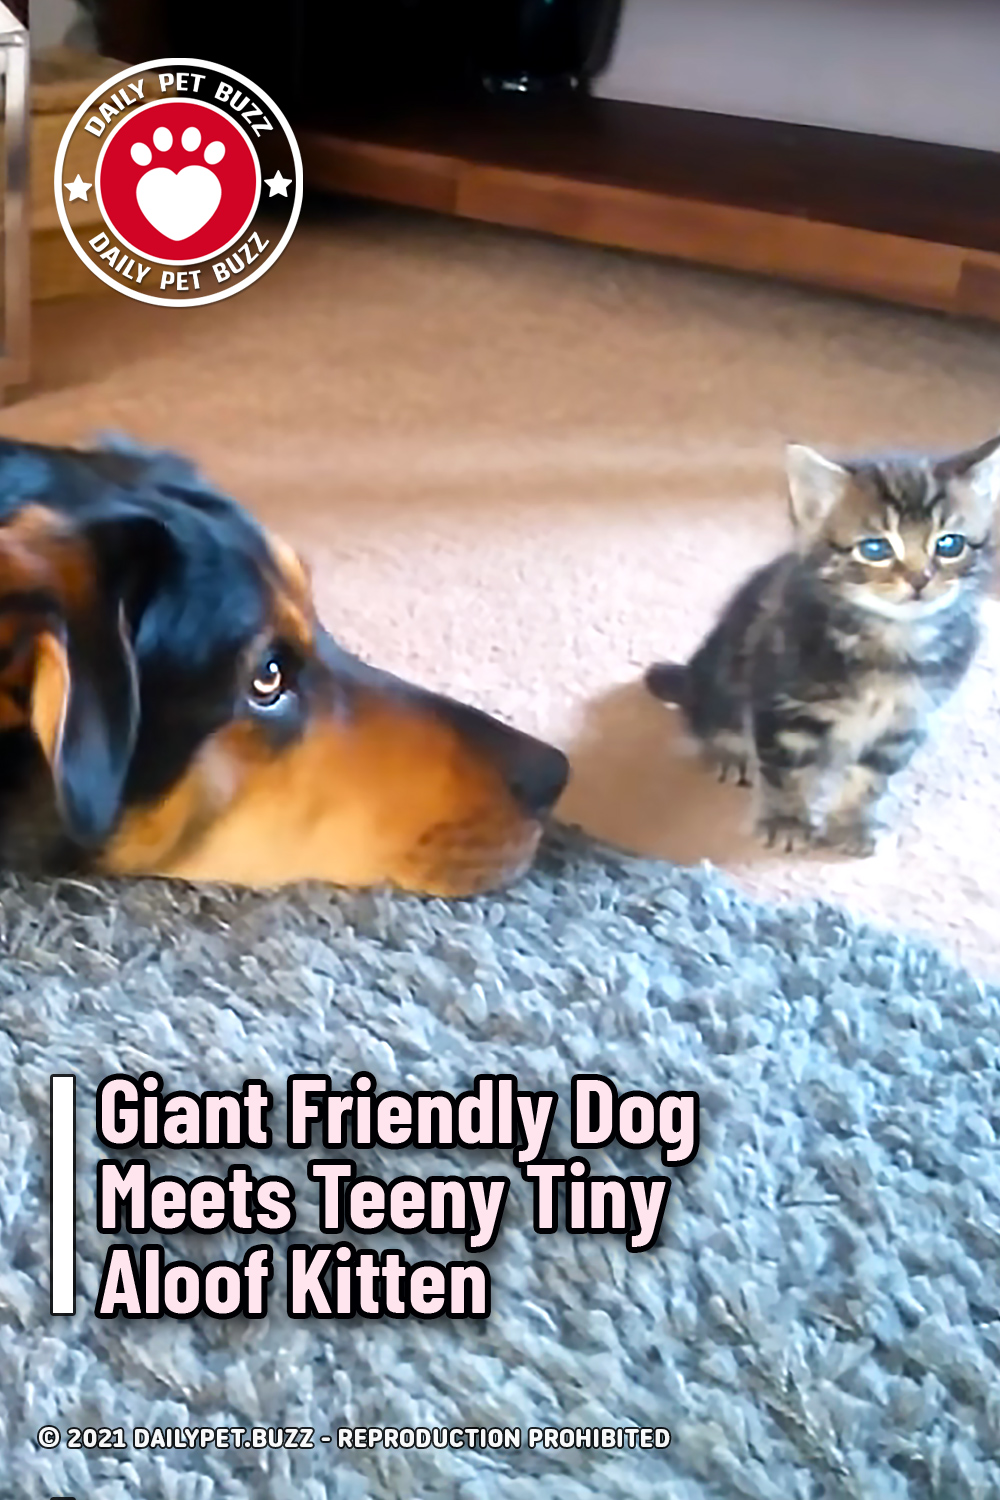 Giant Friendly Dog Meets Teeny Tiny Aloof Kitten